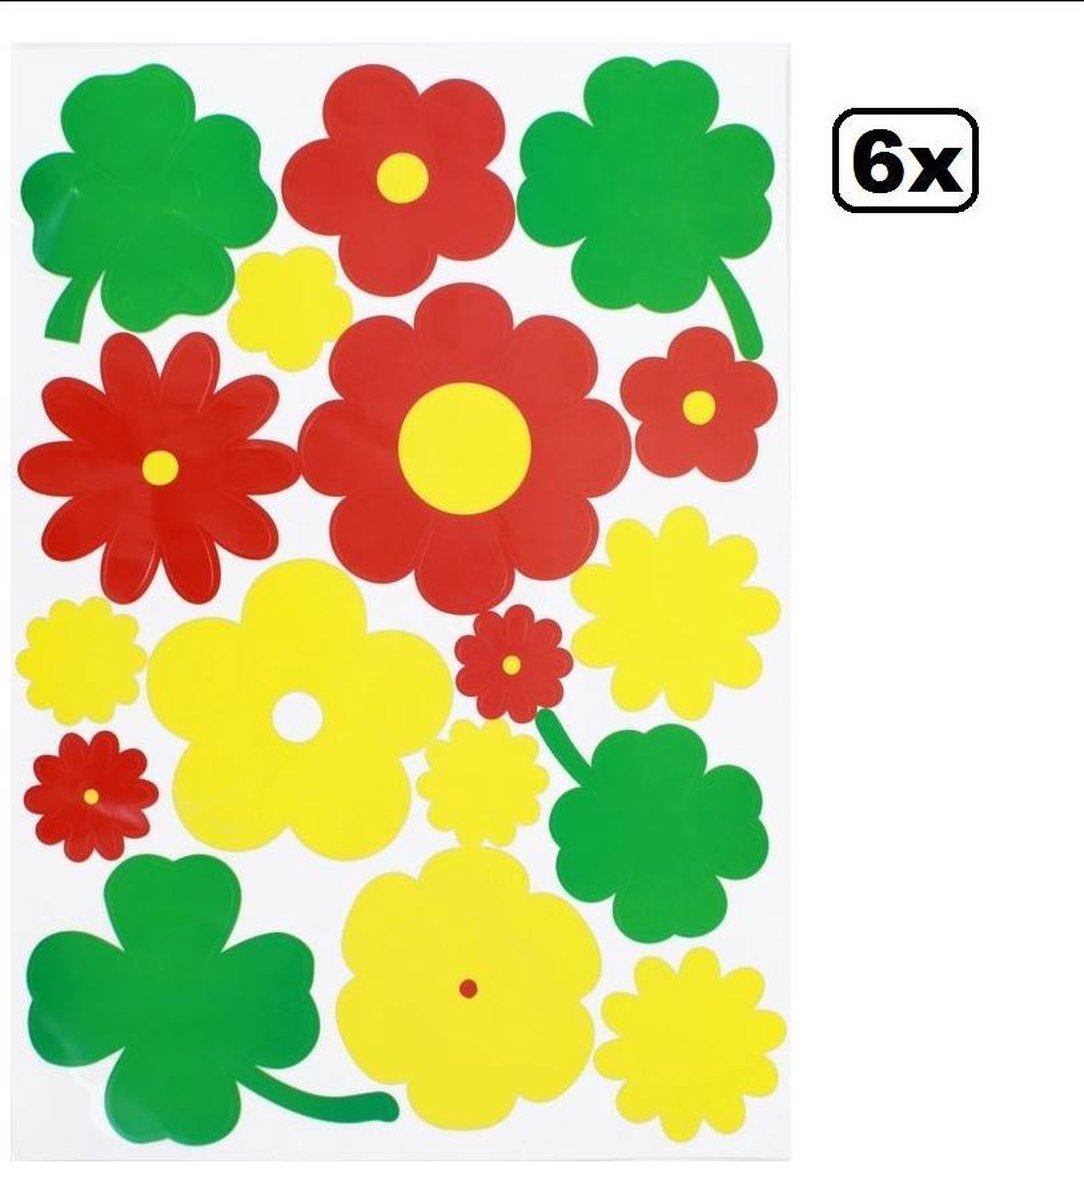 6x Raamsticker adhesive bloemen rood/geel/groen 35x50cm - Merkloos